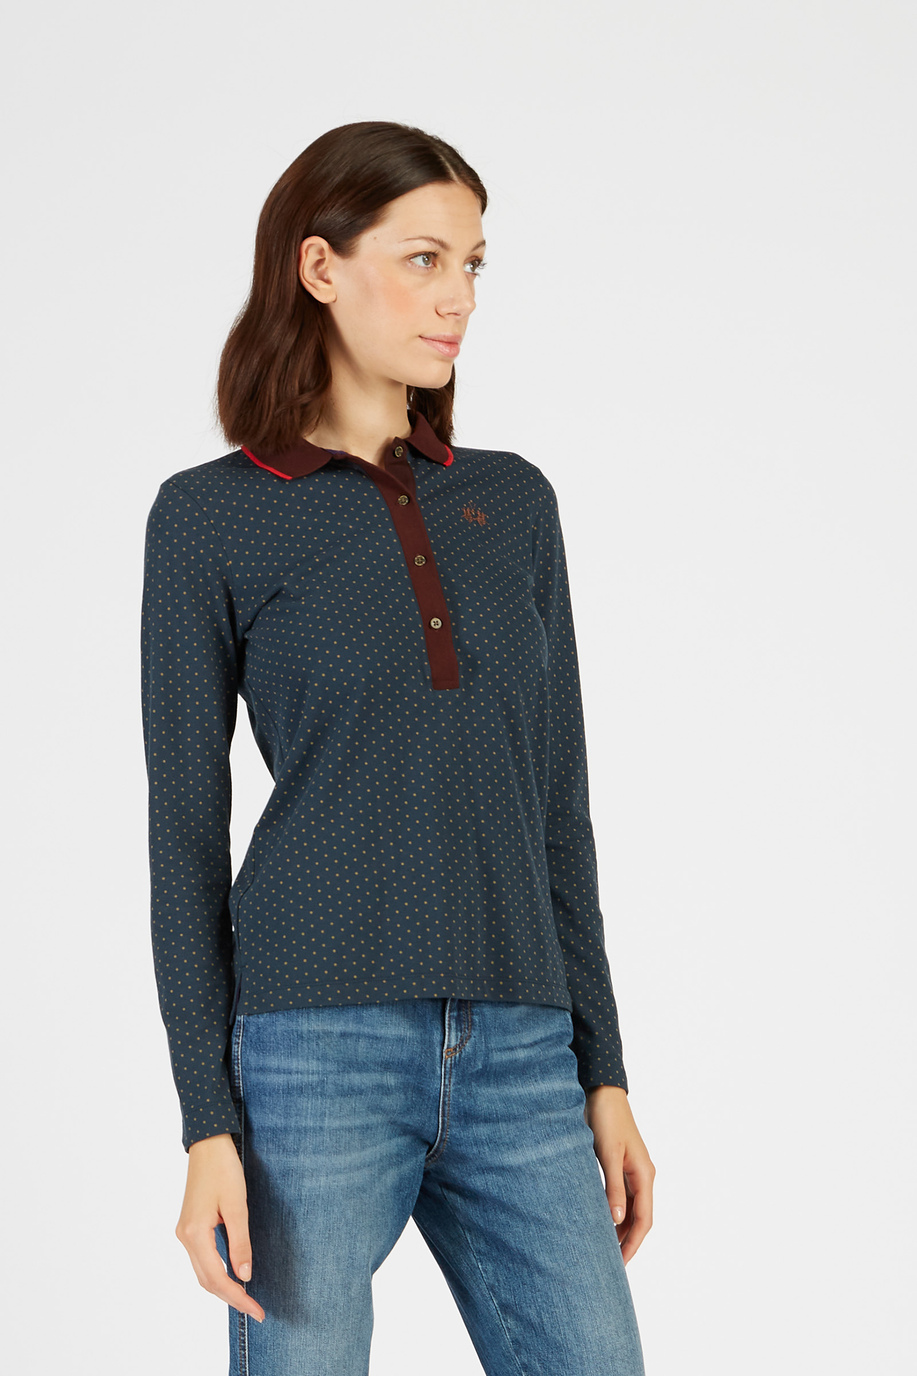 Argentina Damen Langarm-Poloshirt aus Regular Fit Stretch-Baumwolle - Unsere Favoriten für sie | La Martina - Official Online Shop